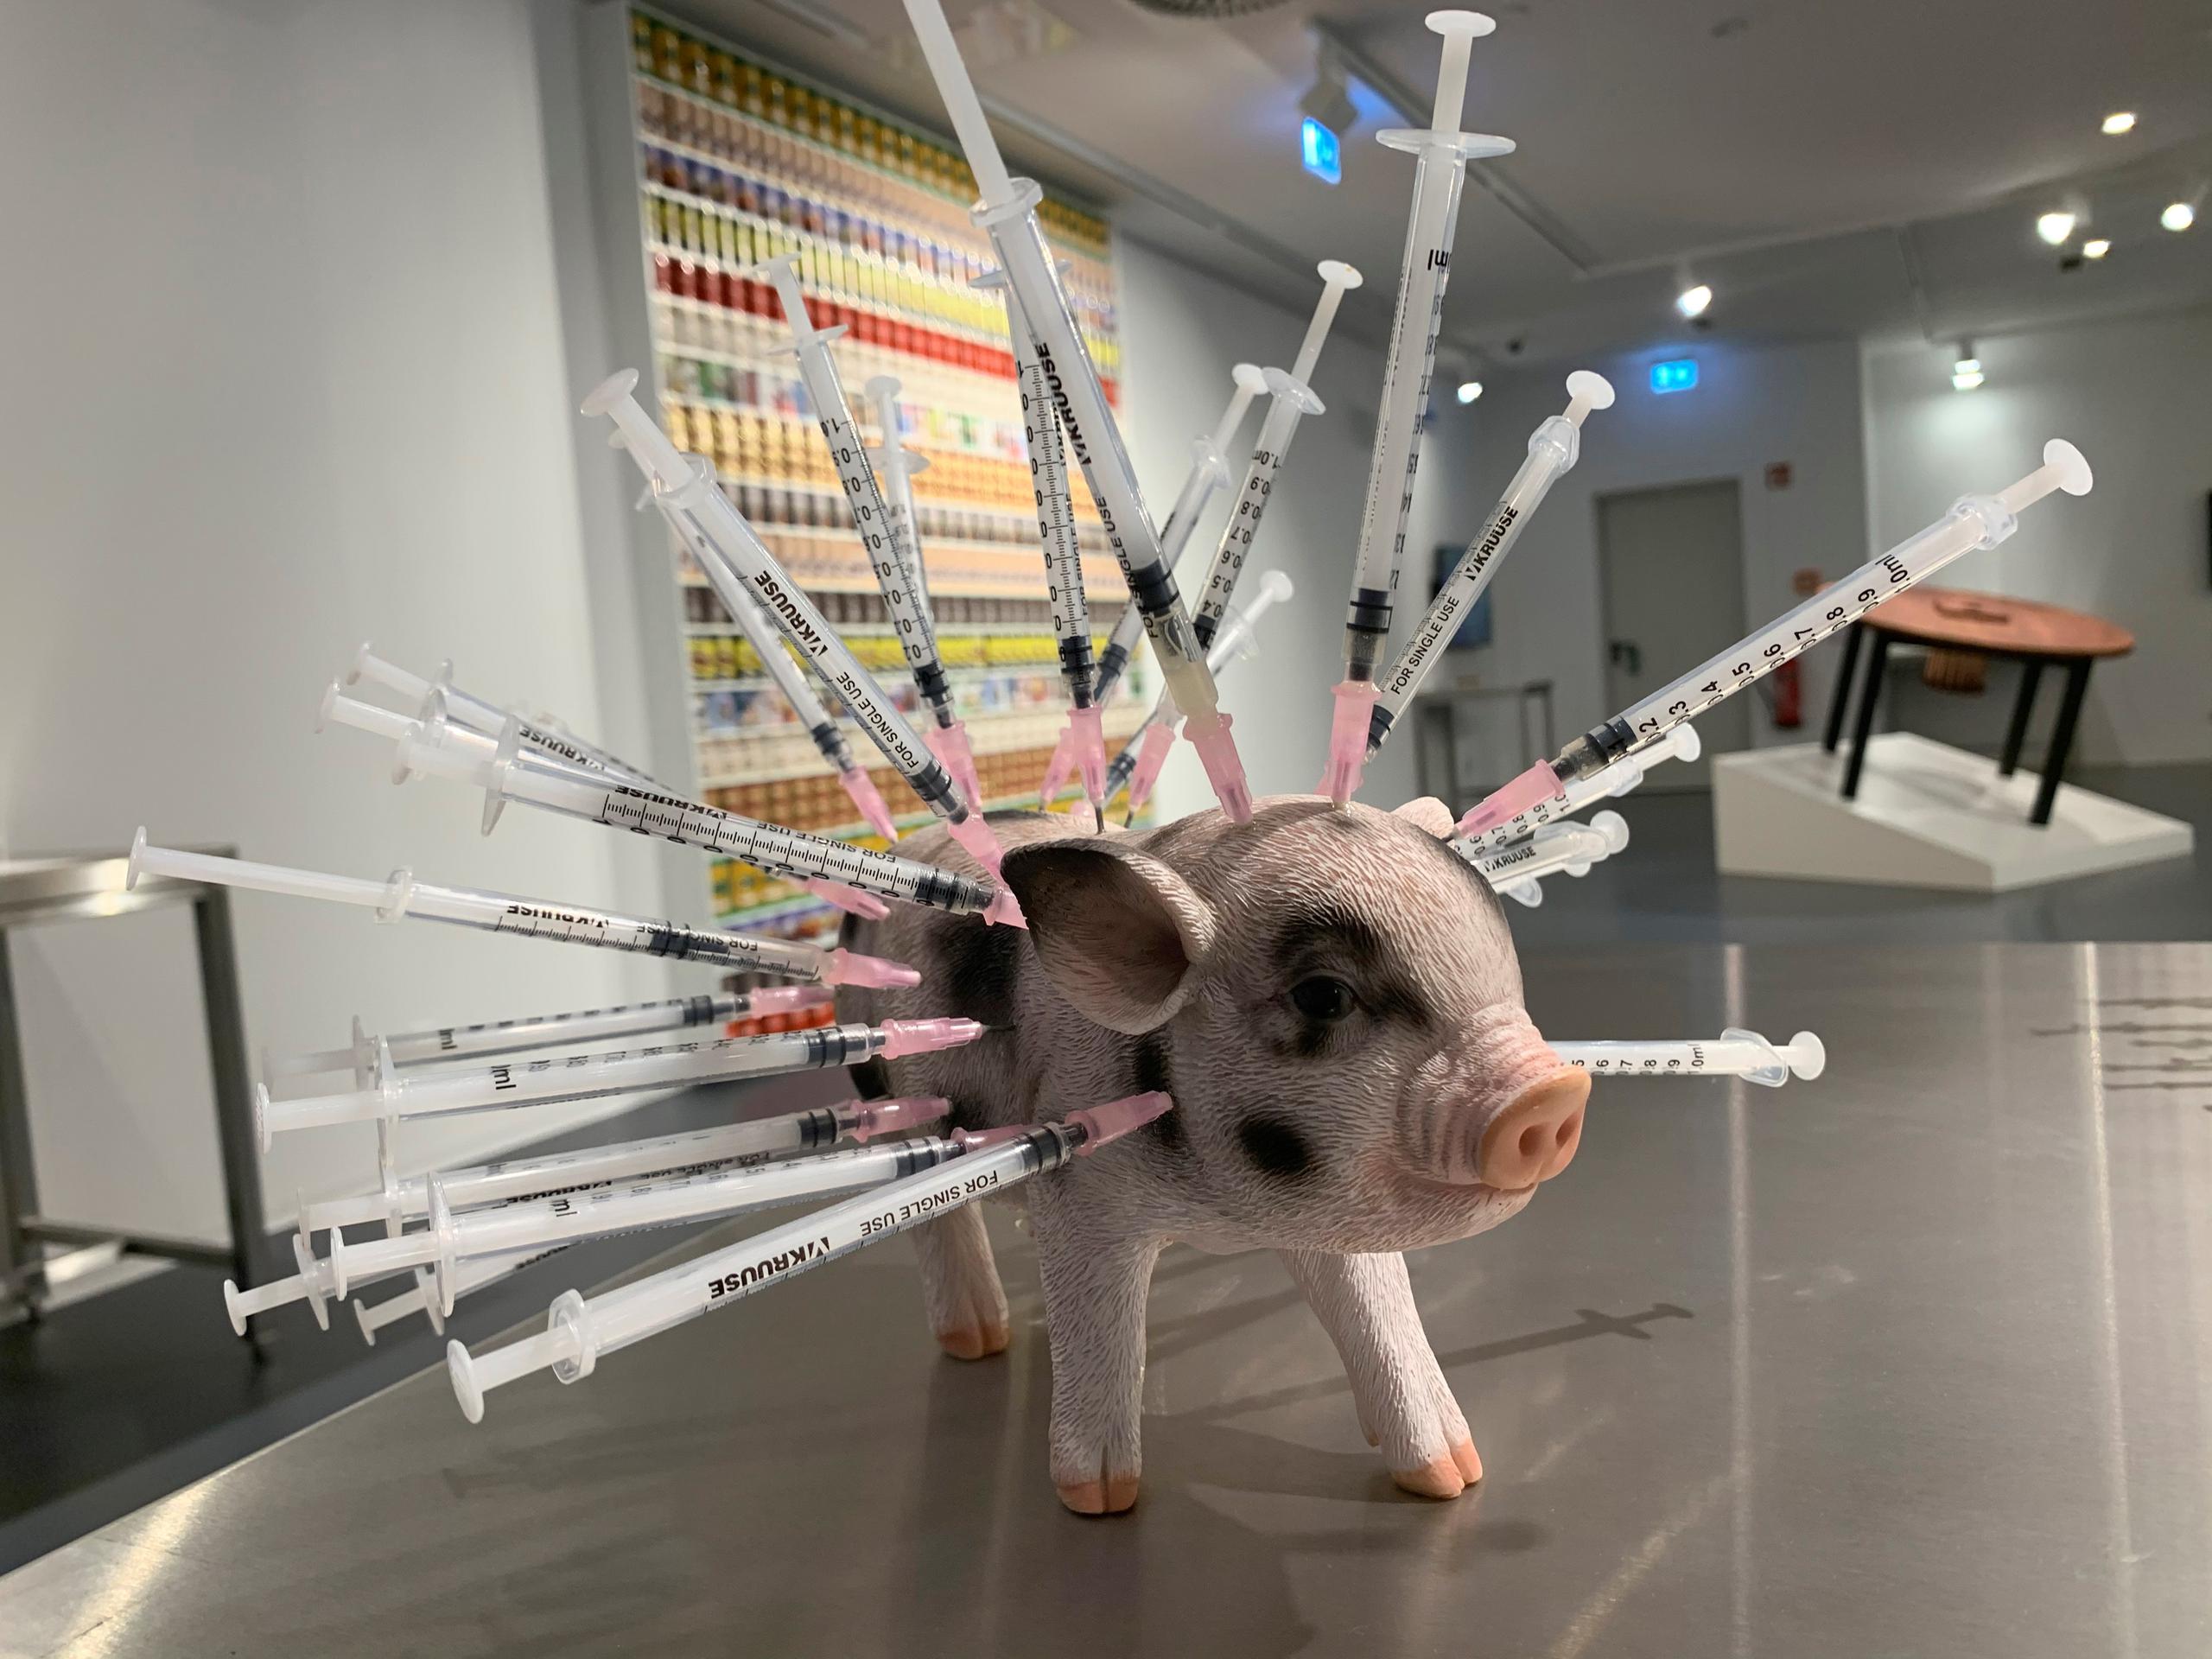 Escultura que denuncia como son tratados los cerdos en la cadena de comida expuesta en el Disgusting Food Museum, en Berlín.